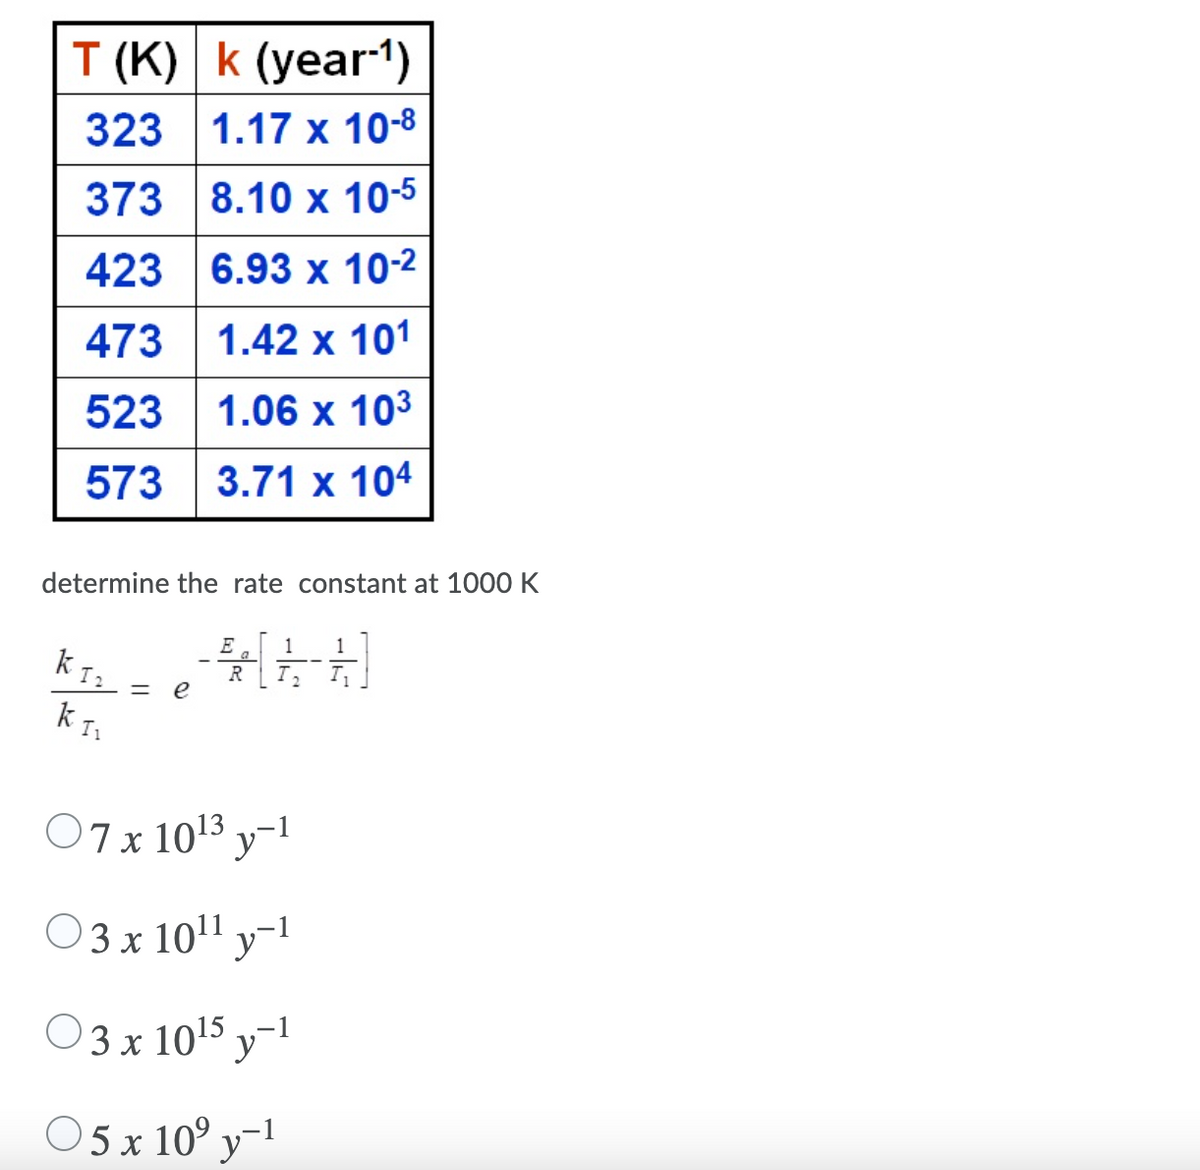 T (K) k (year-1)
323 1.17 x 10-8
373 8.10 x 10-5
423 6.93 x 10-2
473 1.42 x 101
523 1.06 x 103
573 3.71 x 104
determine the rate constant at 1000 K
E
1
1
a
R
I,
%3D
e
K Is
O7x 1013 y-1
03x 101 y-1
O3 x 1015
O 5 x 10° y-1
